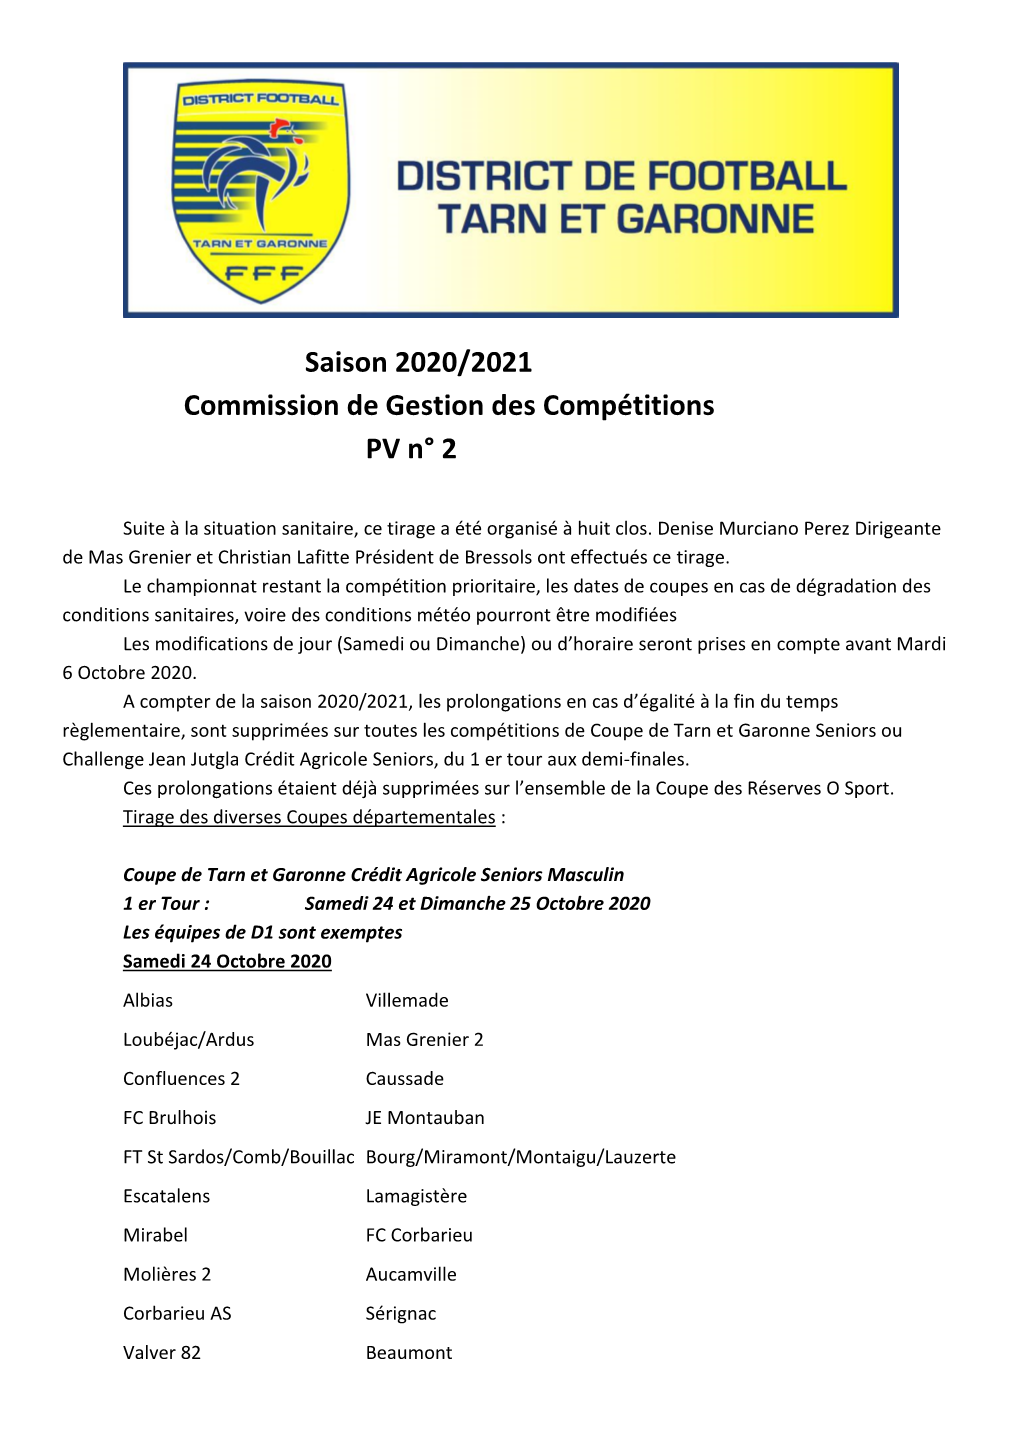 Saison 2020/2021 Commission De Gestion Des Compétitions PV N° 2